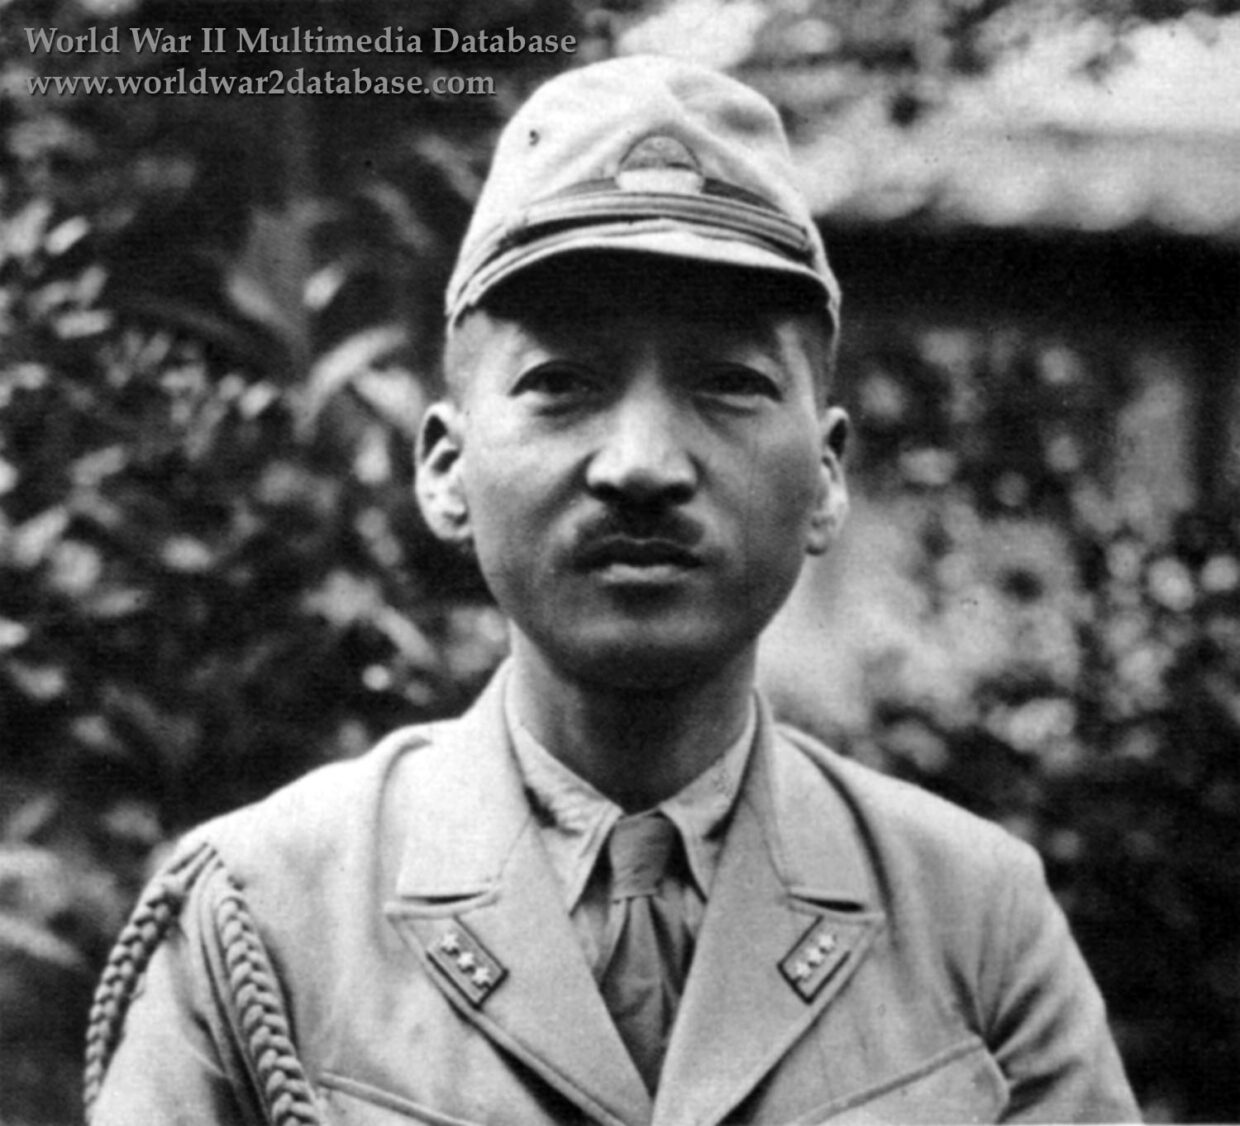 Imperial Japanese Navy Captain Mitsuo Fuchida